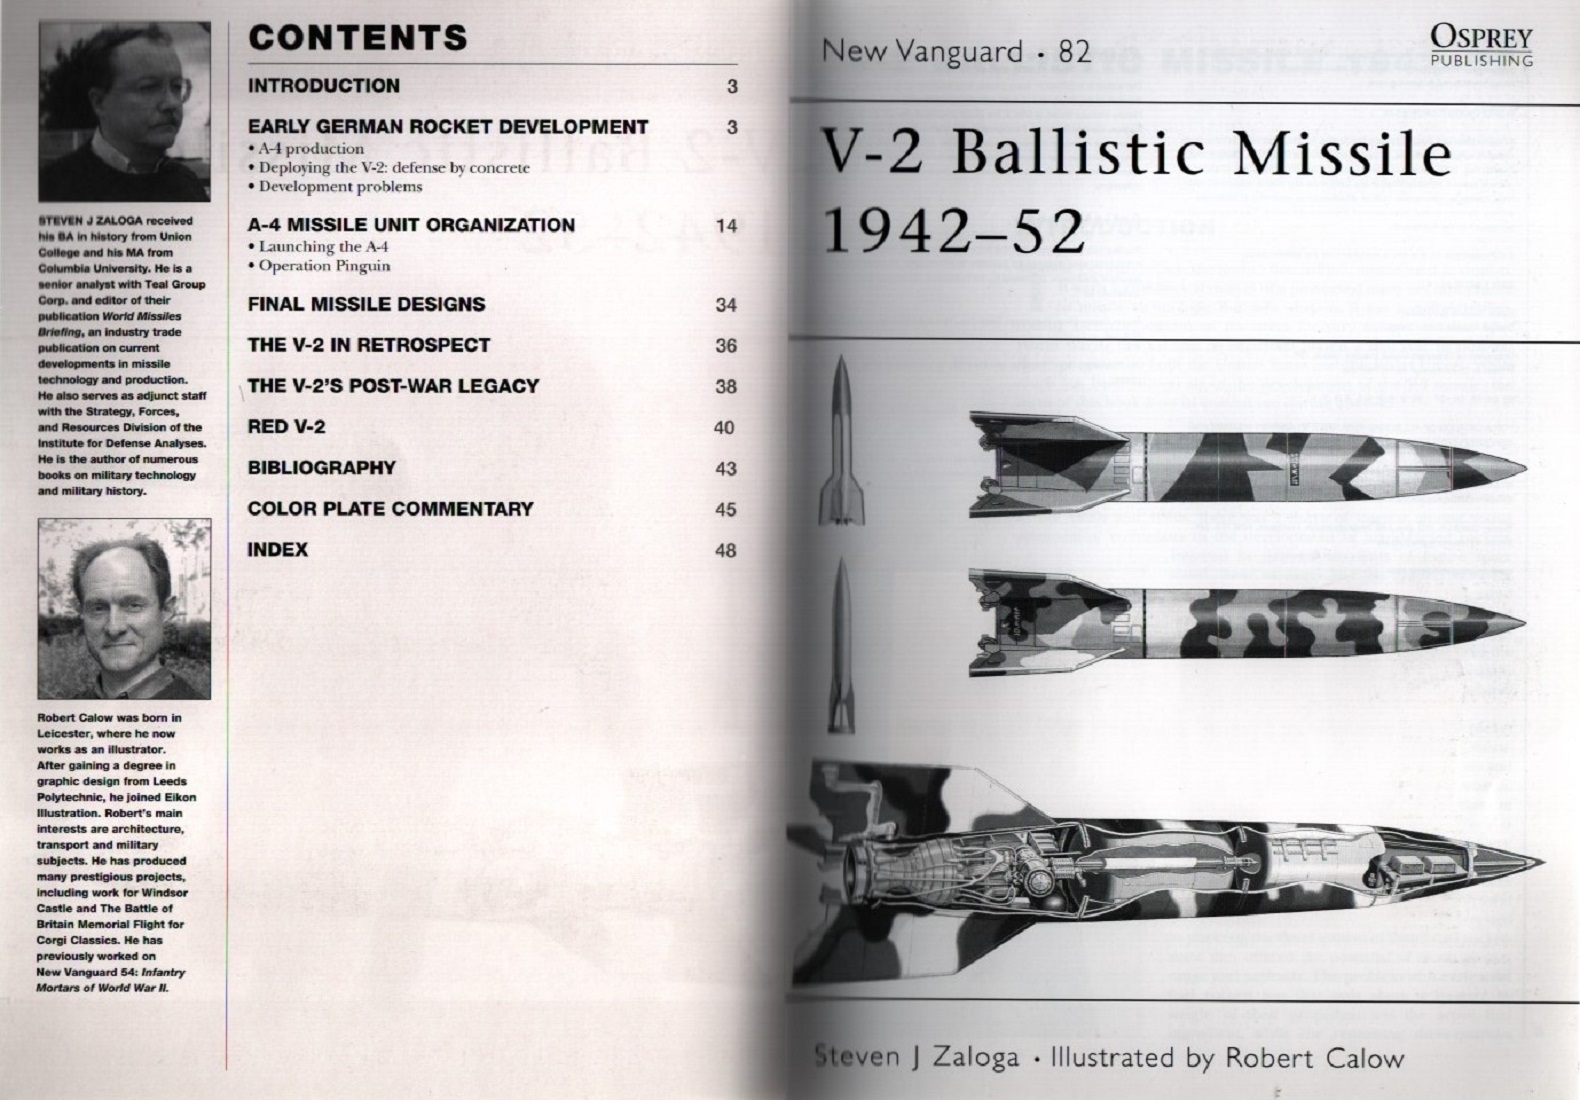 New Vanguard 82: V-2 Ballistic Missile 1942-52 by Steven J Zaloga, Signed by Johann Tschinkel. - Image 3 of 3